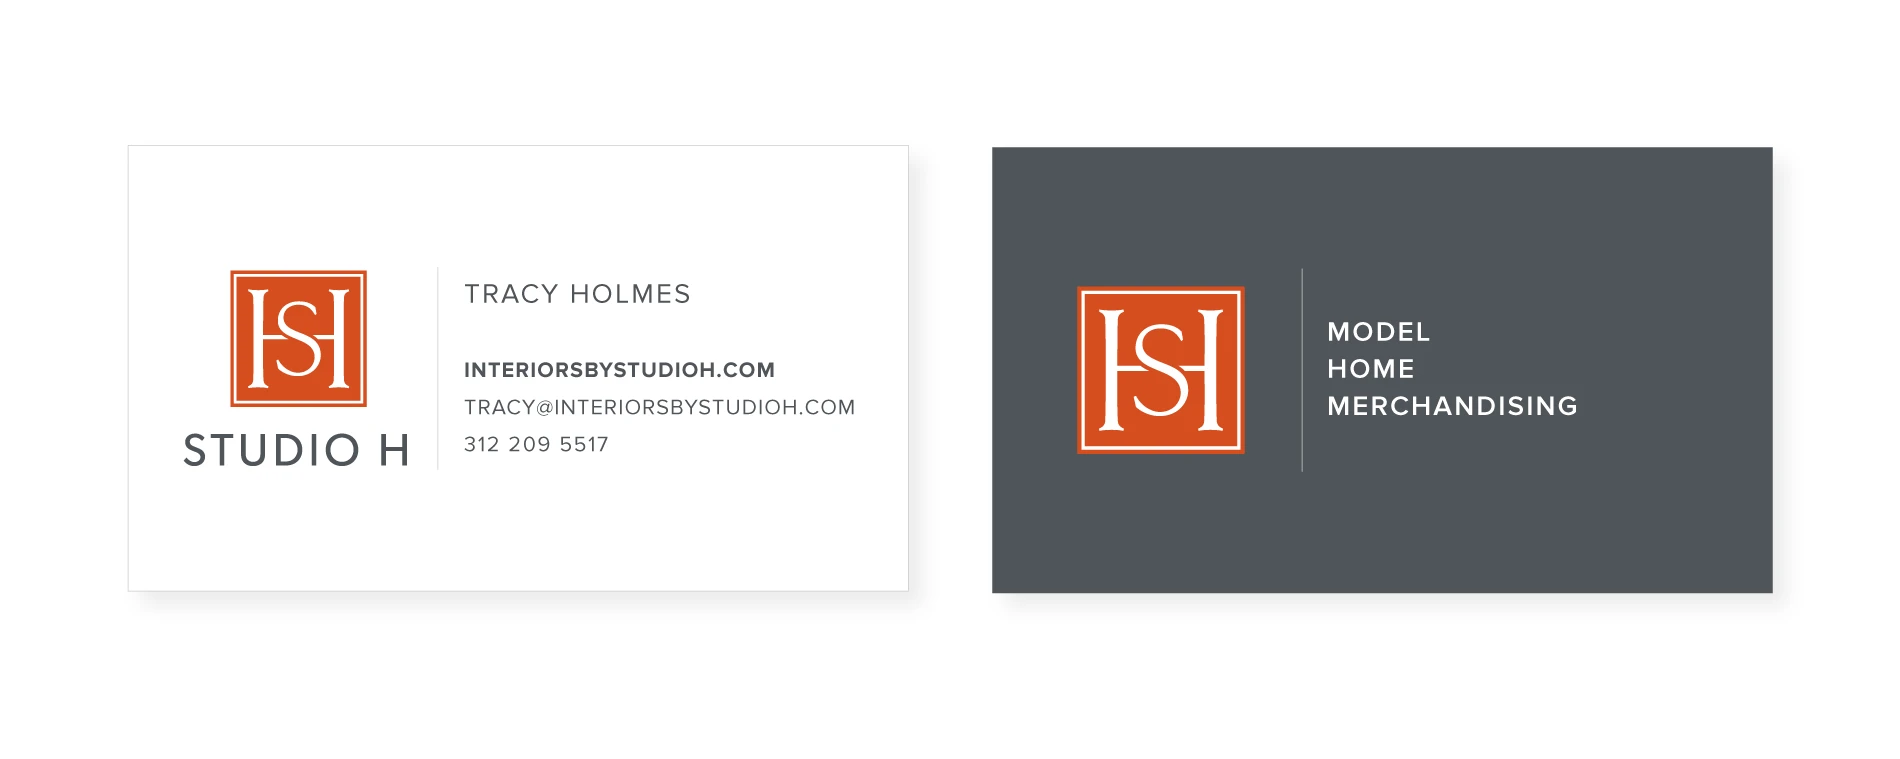 Studio H Interior business card design